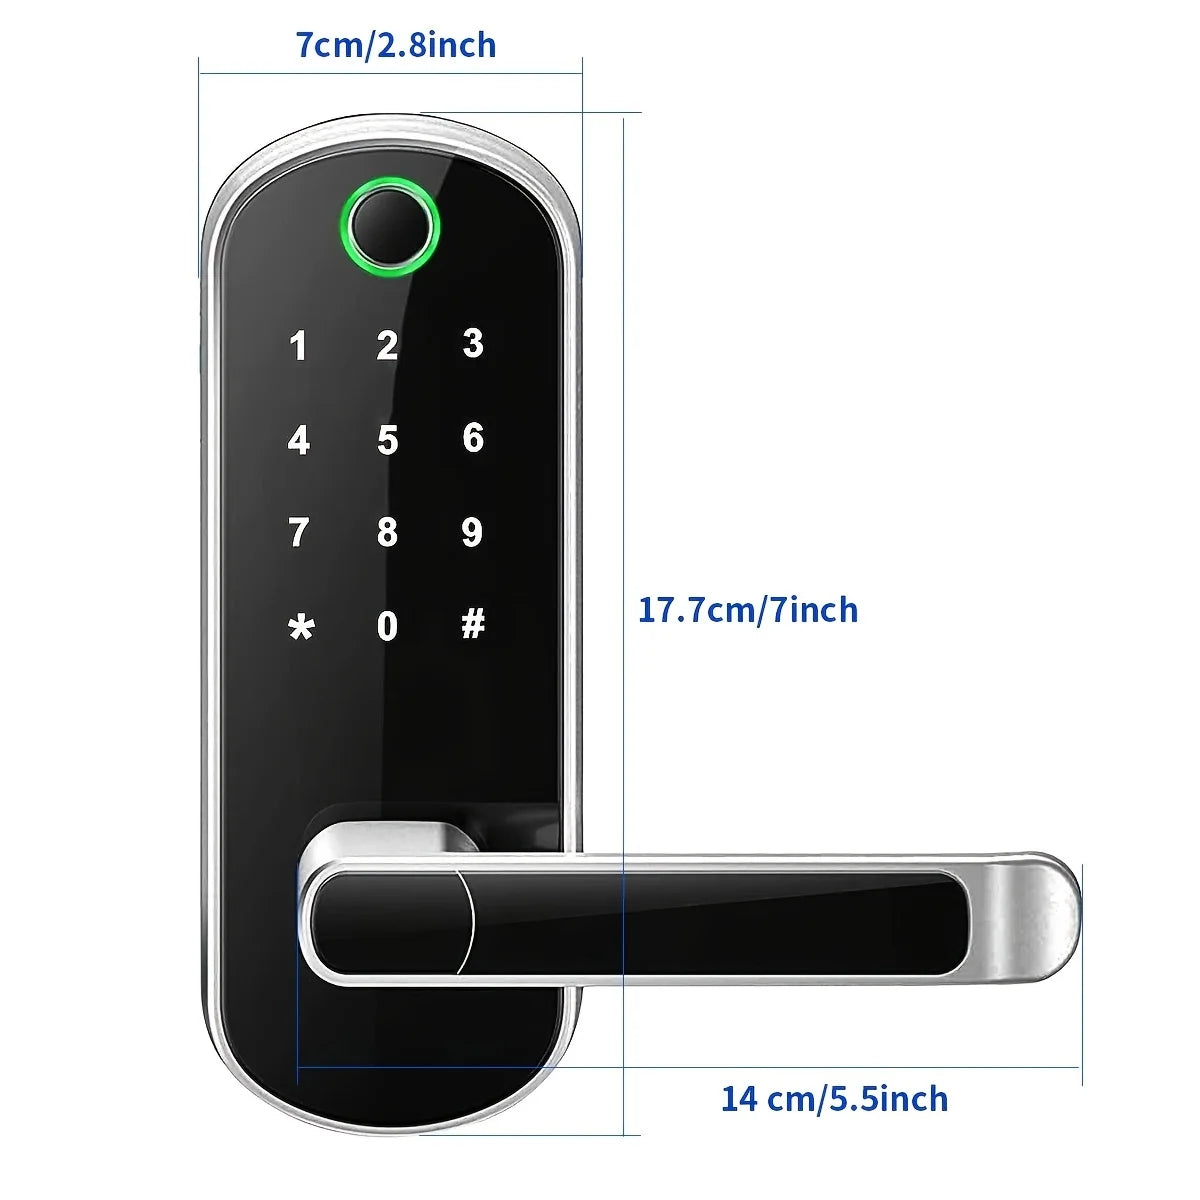 Smart Fingerprint Door Lock with App Control